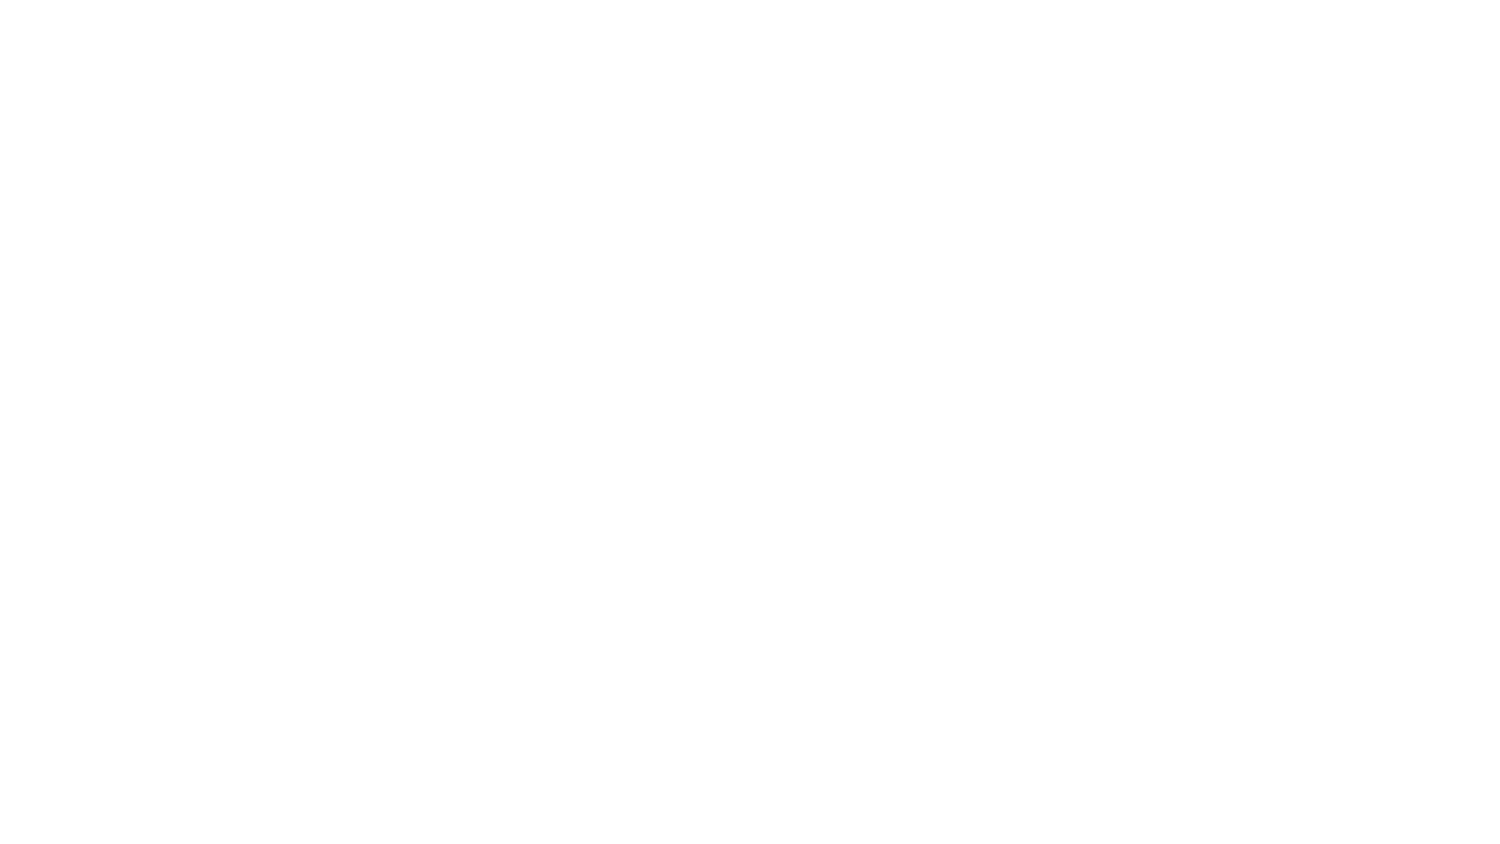 Wildest Europe